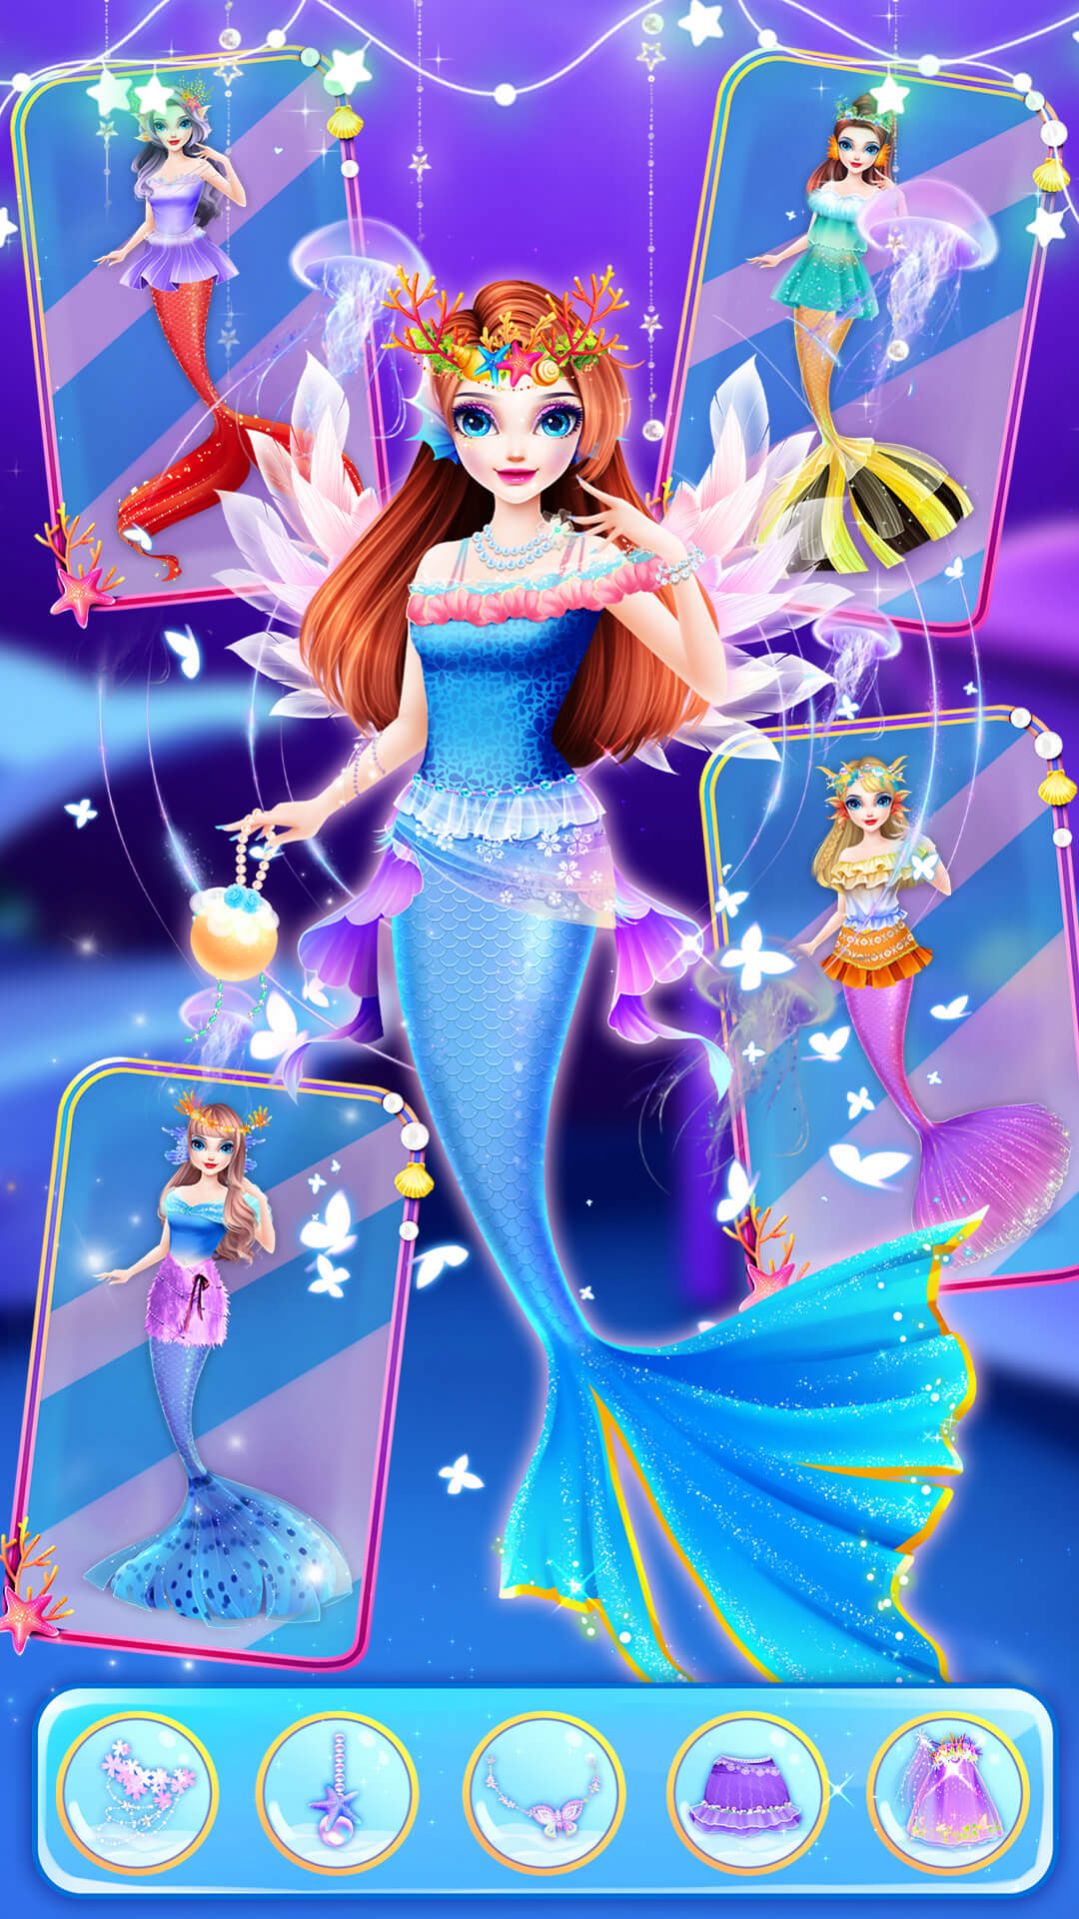 时尚美人鱼城堡装扮故事游戏官方版下载图片2